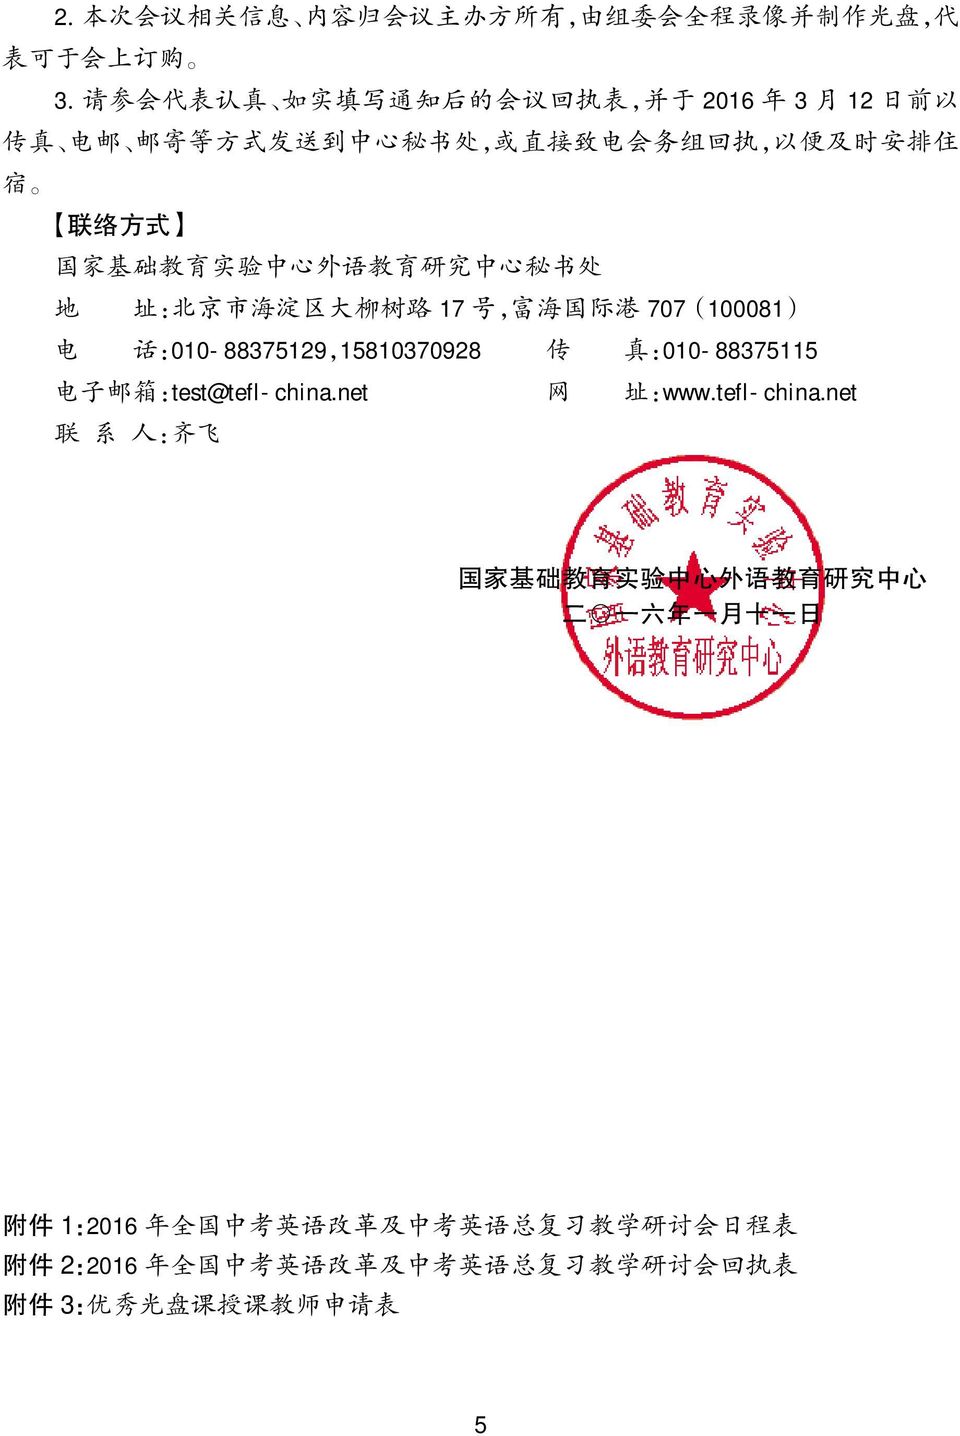 707(100081) 电 话 :010-88375129,15810370928 传 真 :010-88375115 电 子 邮 箱 :test@tefl-china.